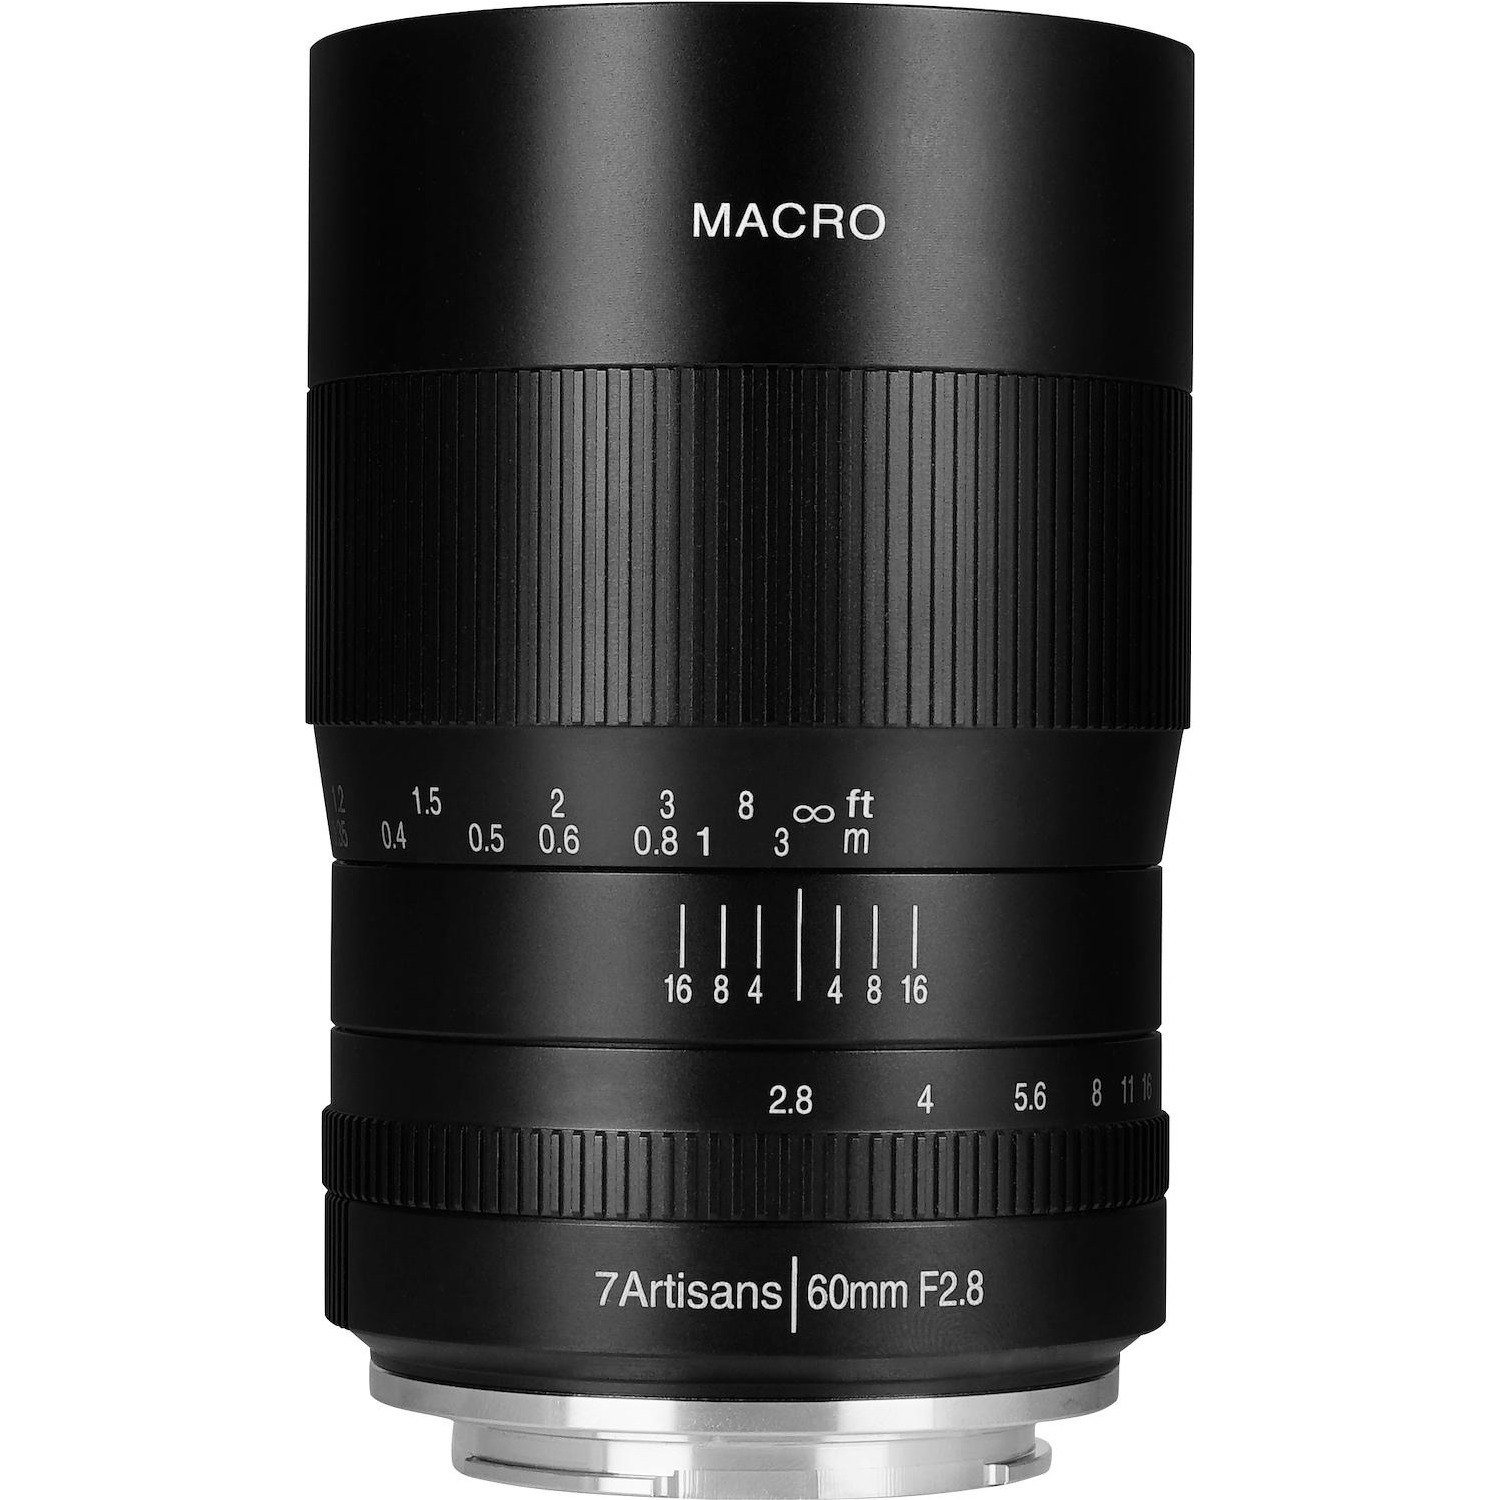 Immagine per Obiettivo 7Artisans 60mm F2.8 macro attacco Canon EOS M da DIMOStore